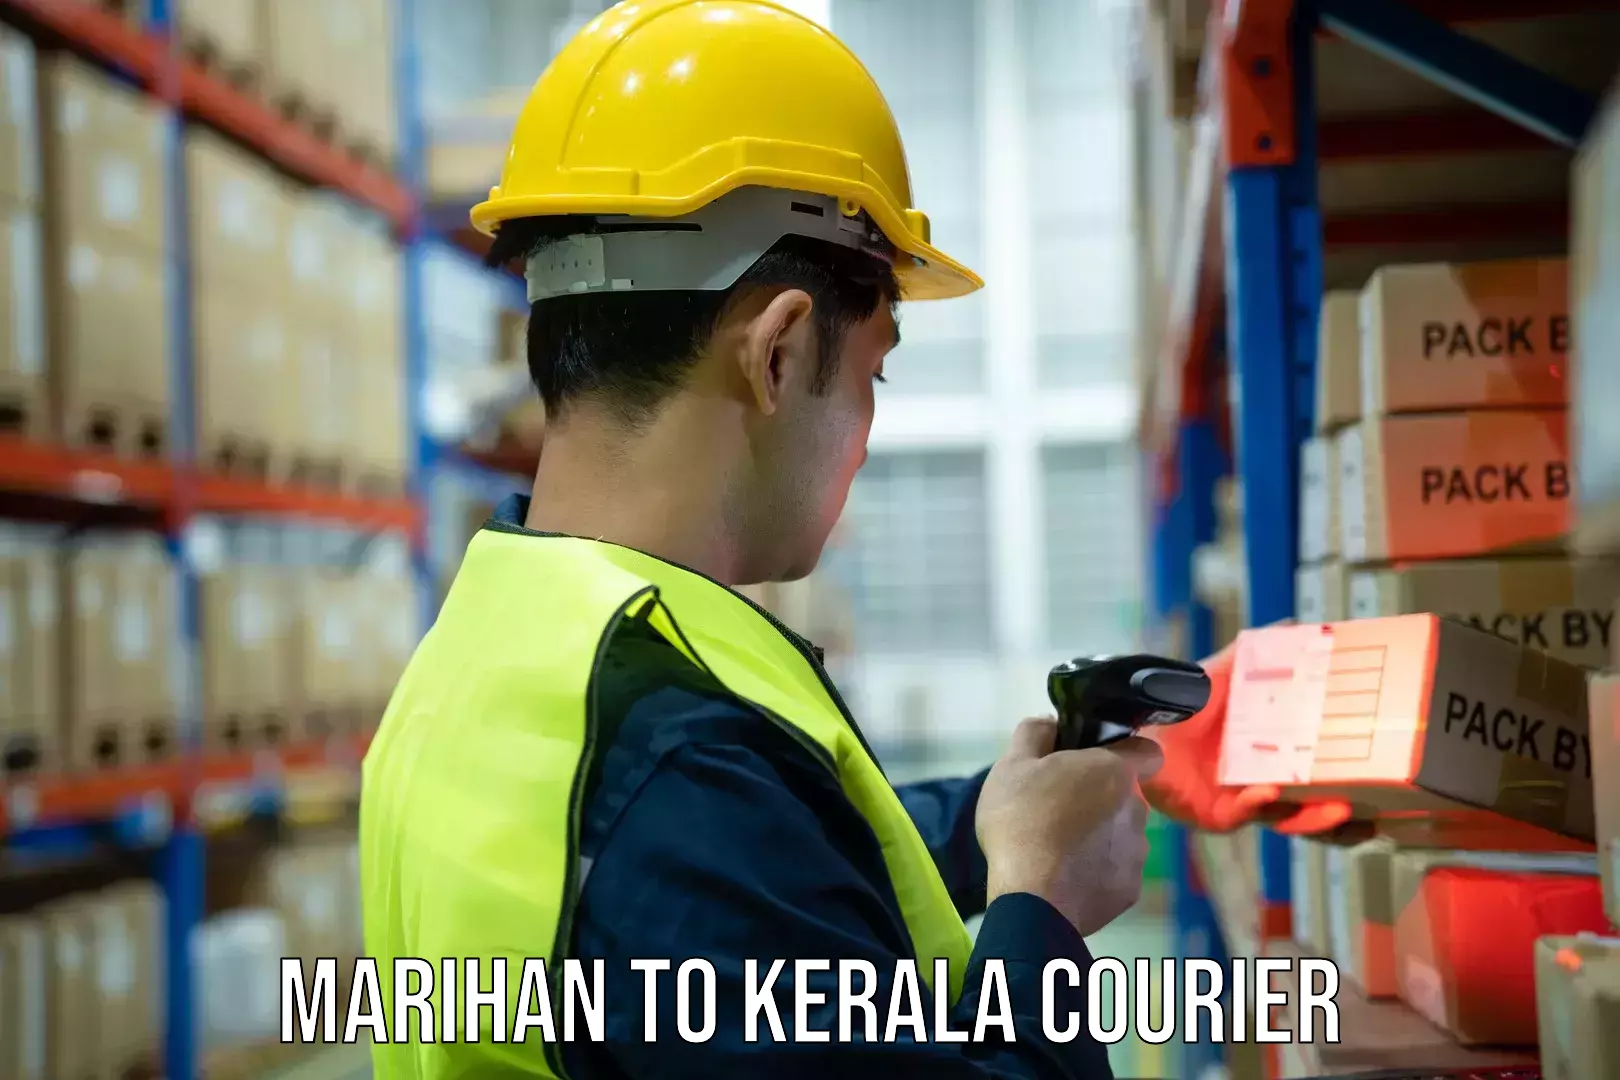 E-commerce logistics support Marihan to Perumbavoor